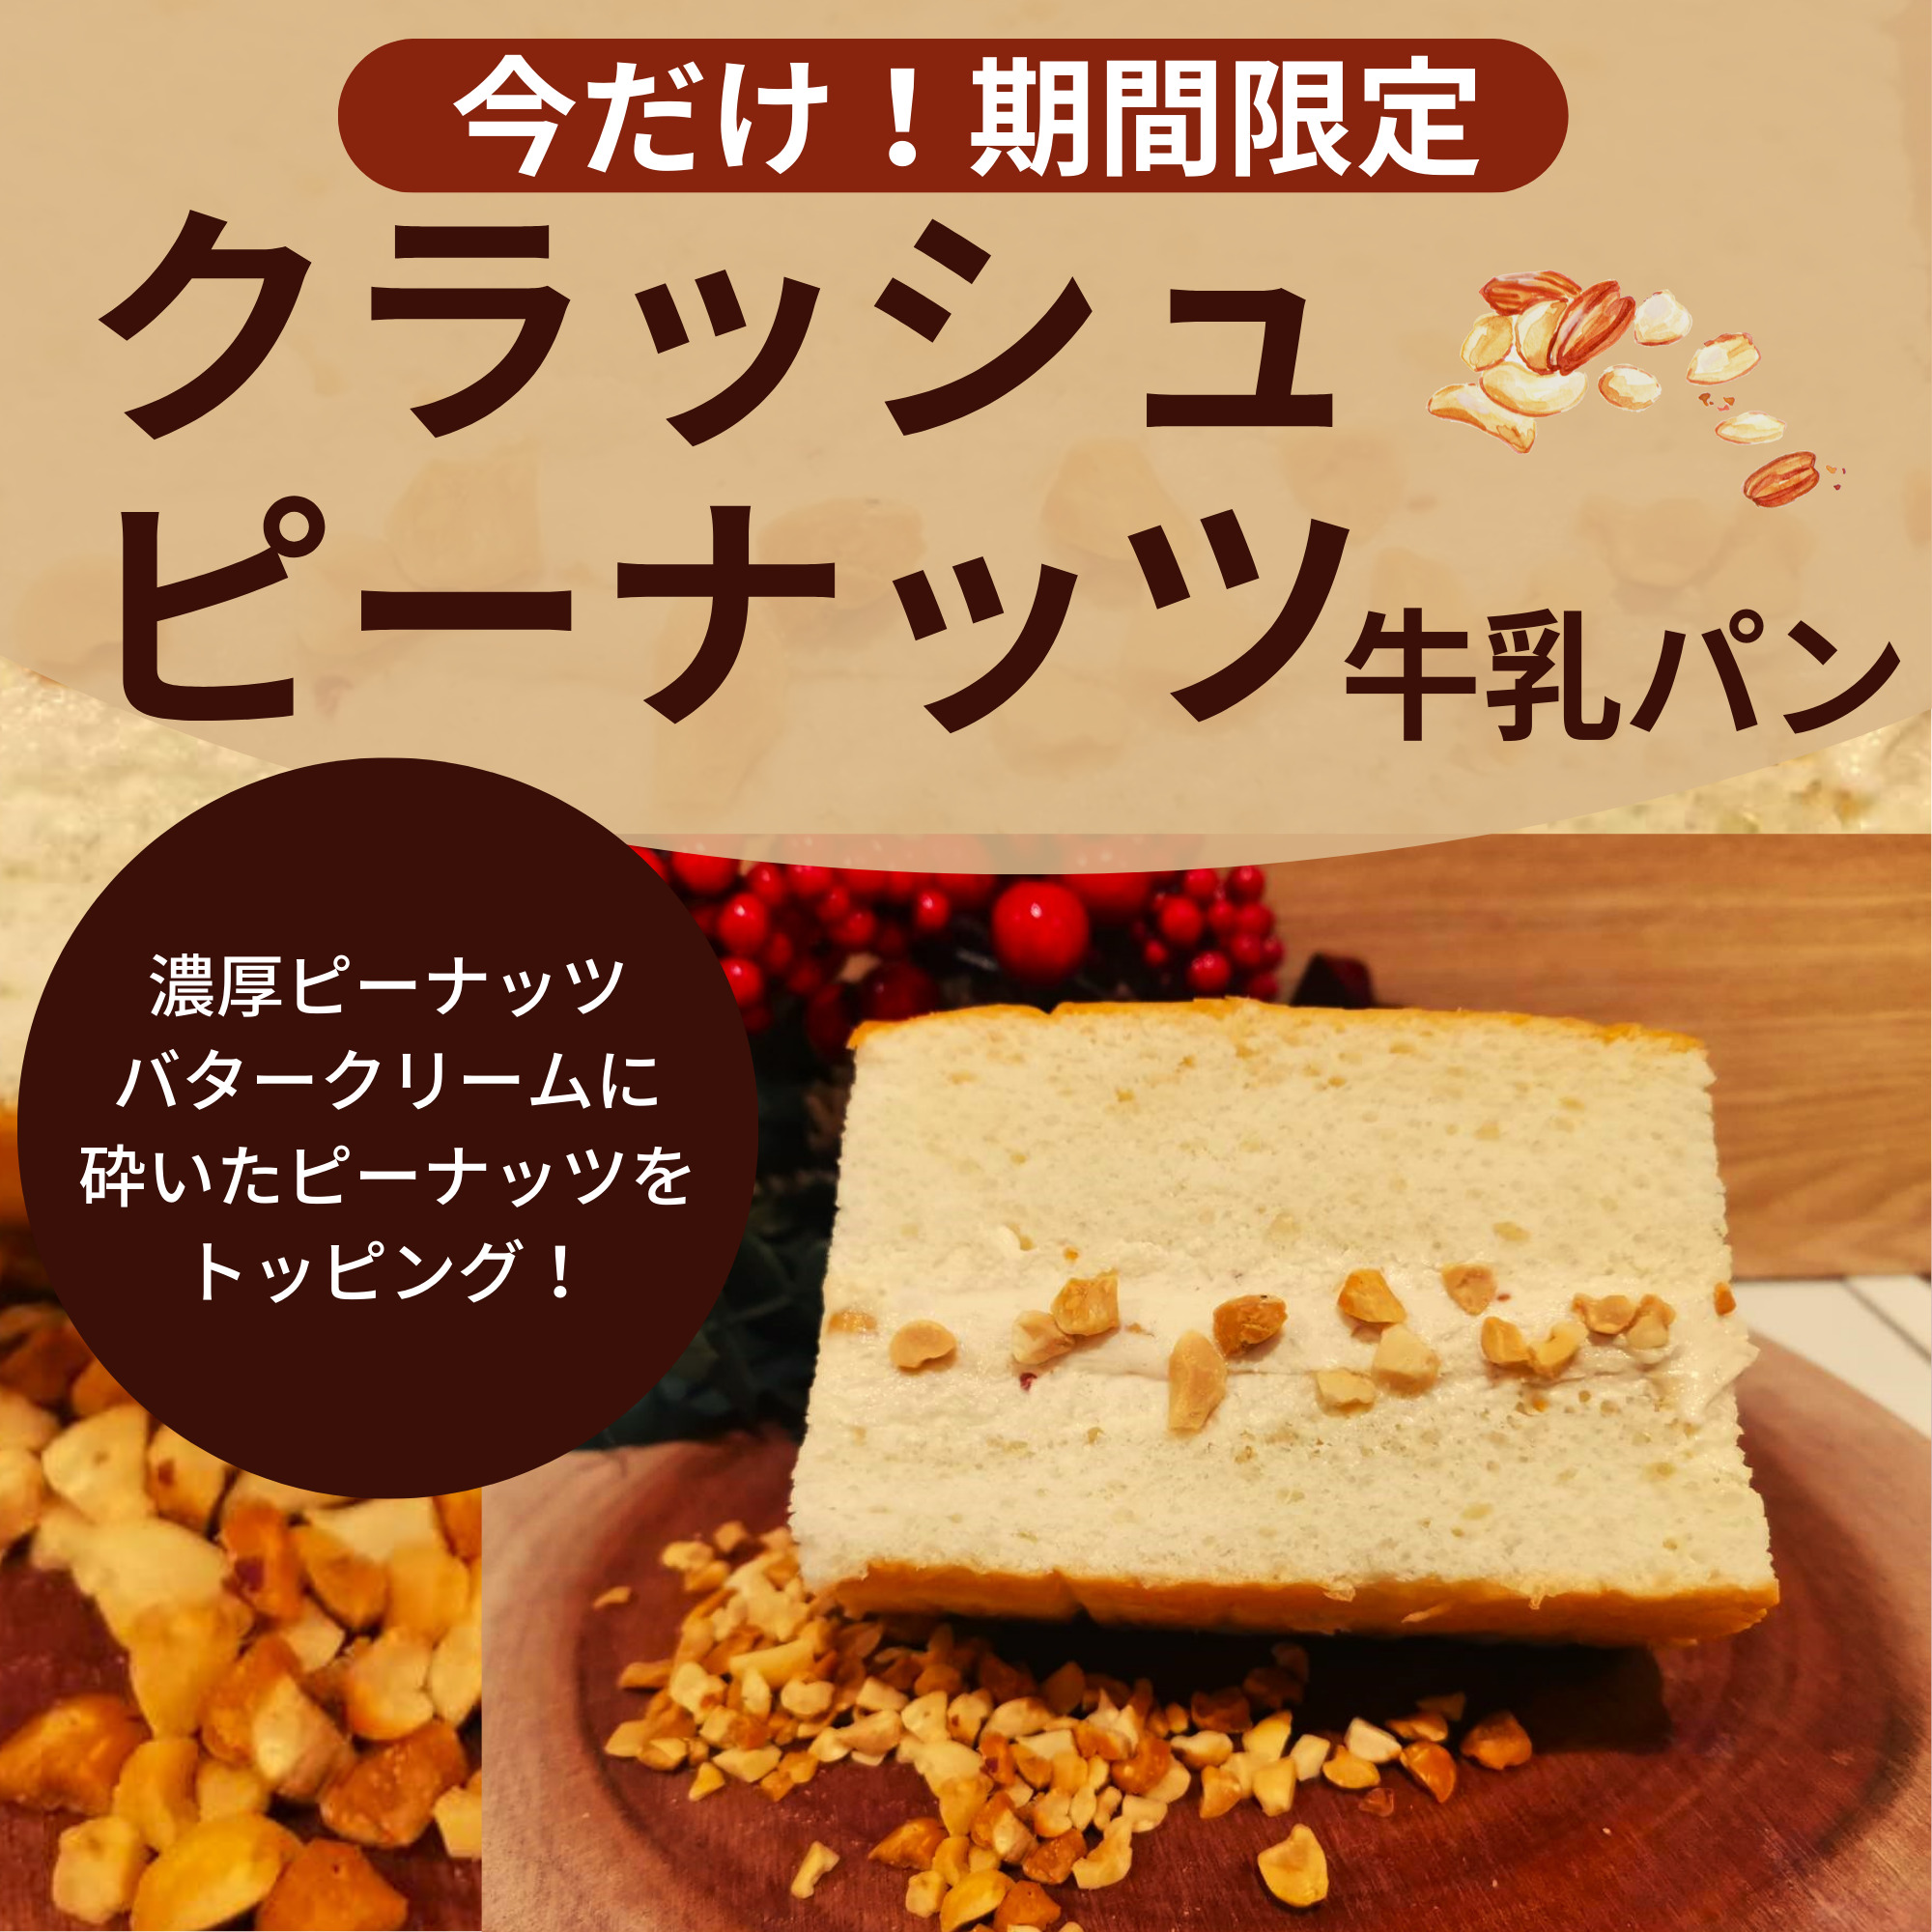 【期間限定】クラッシュピーナッツ牛乳パン